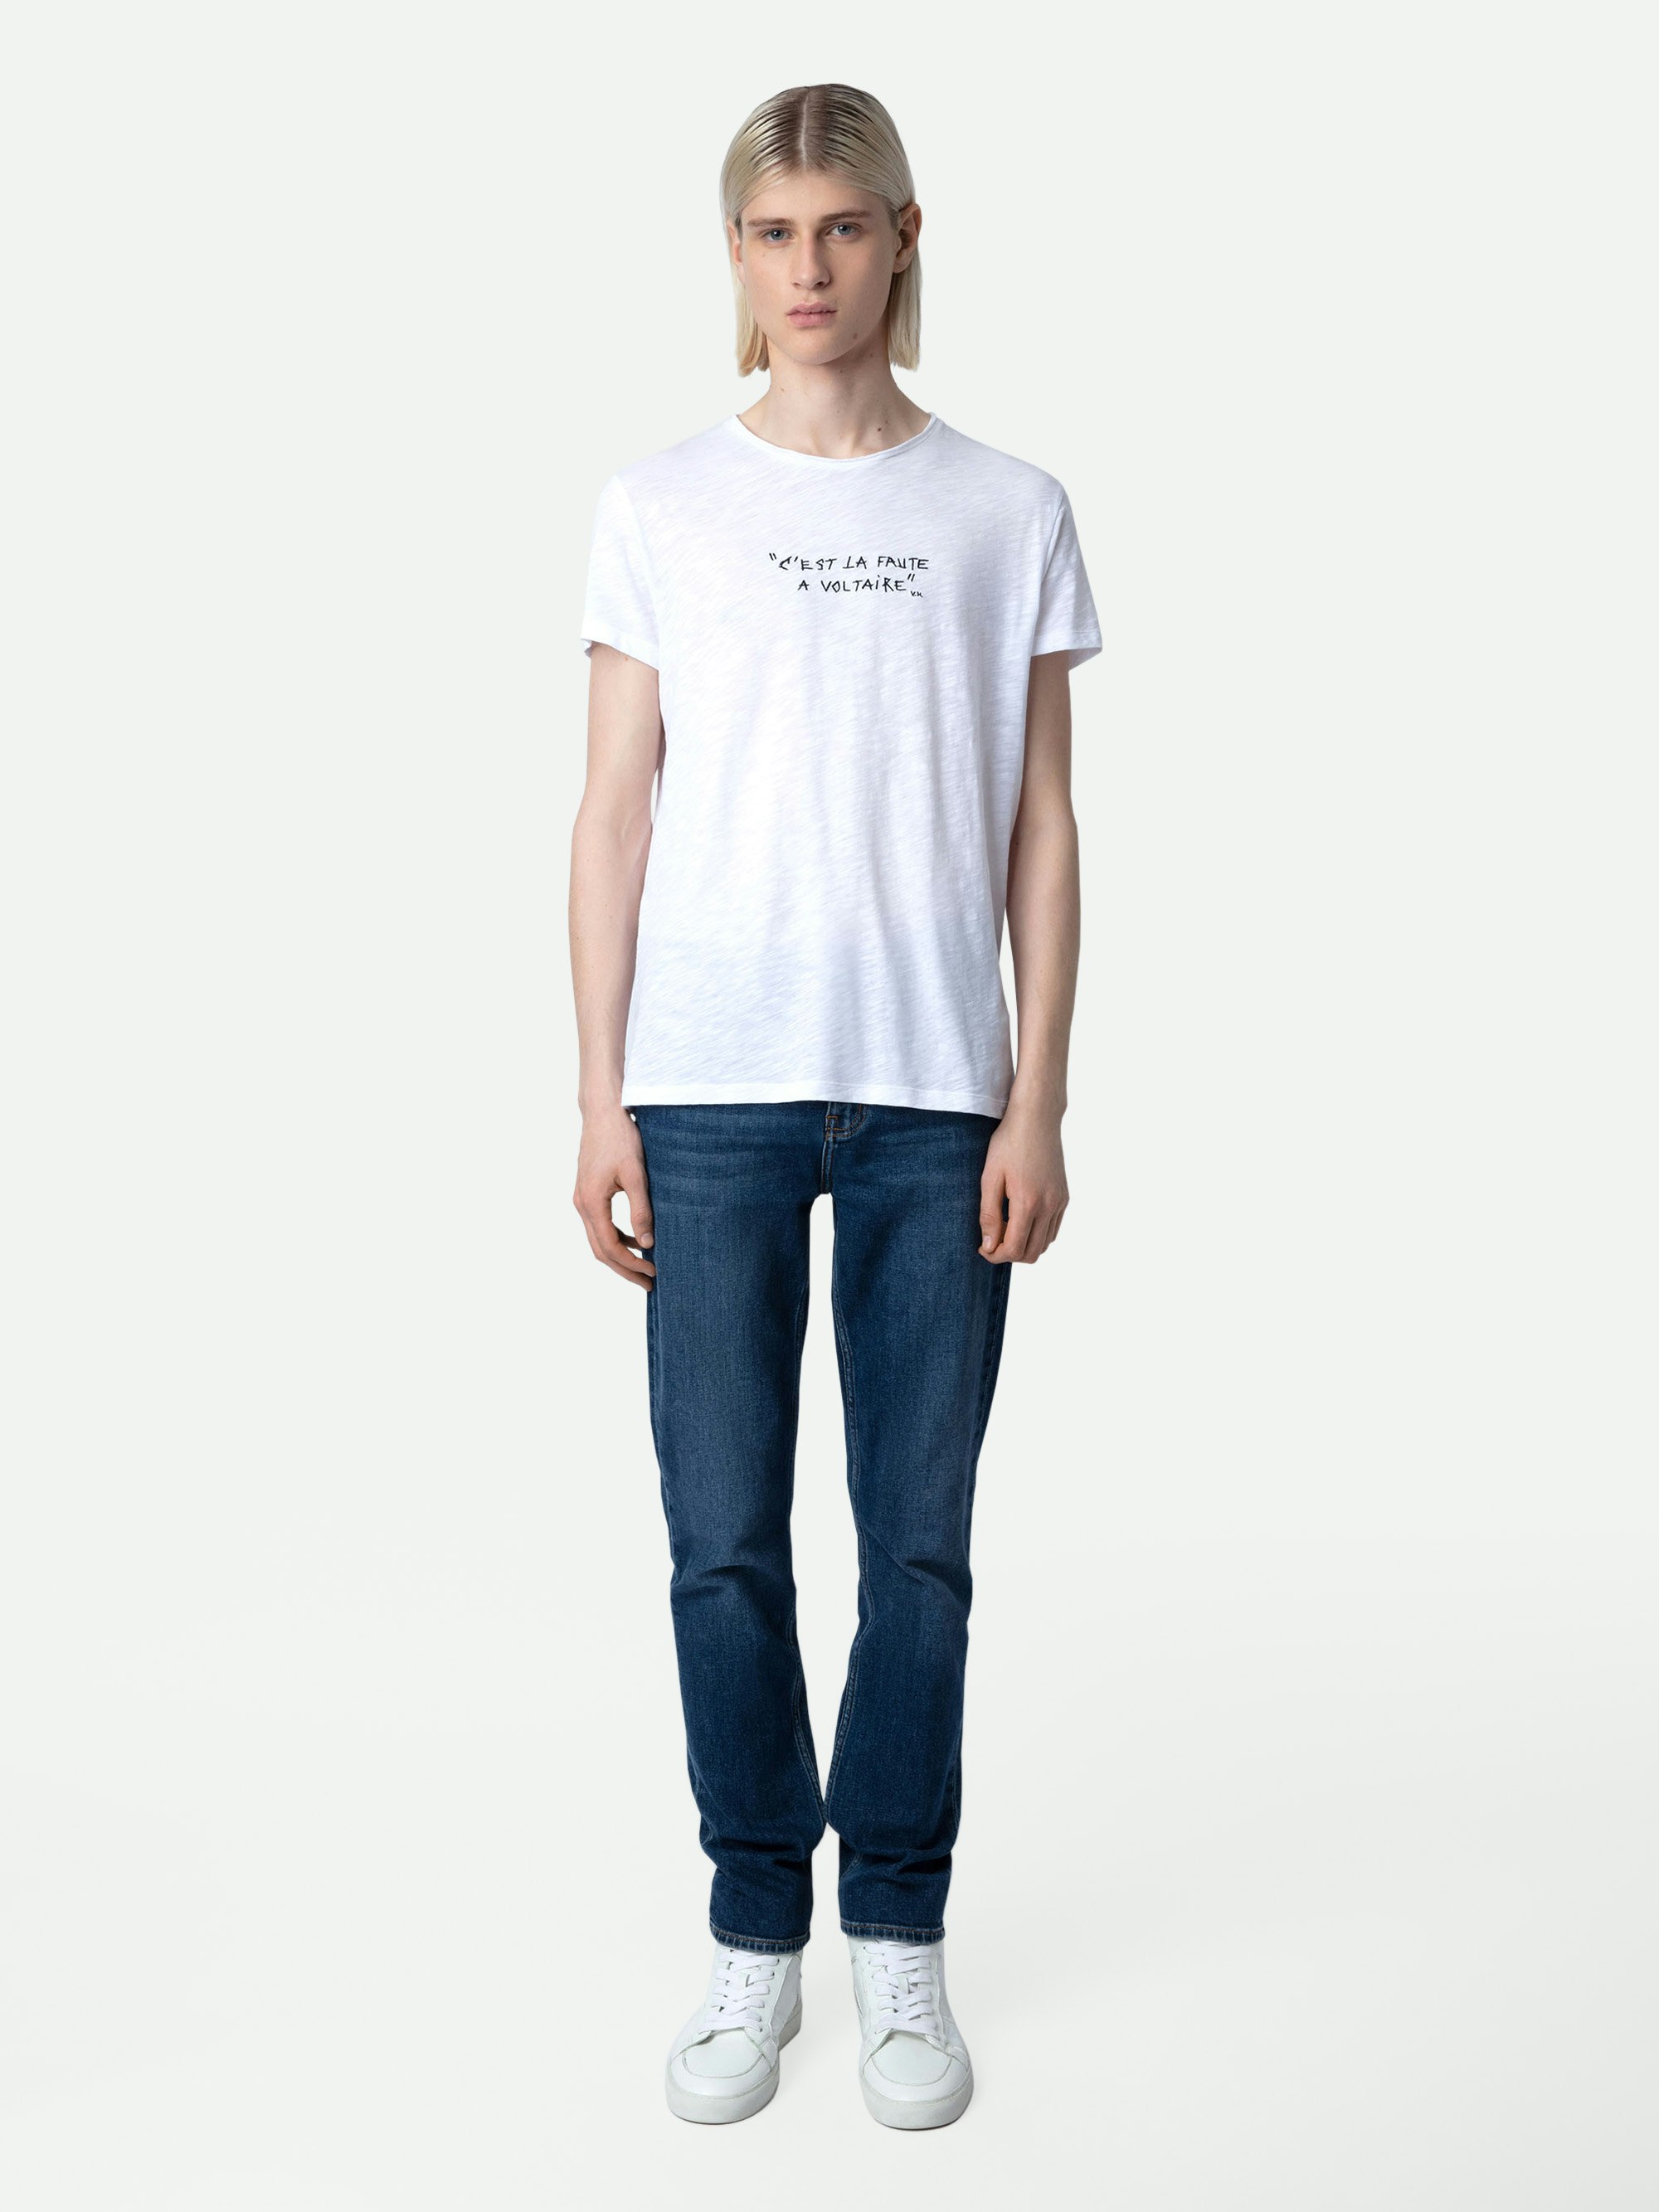 T-Shirt Toby Flamme - T-shirt da uomo in cotone fiammato bianco con scritta "C'est la faute à Voltaire".